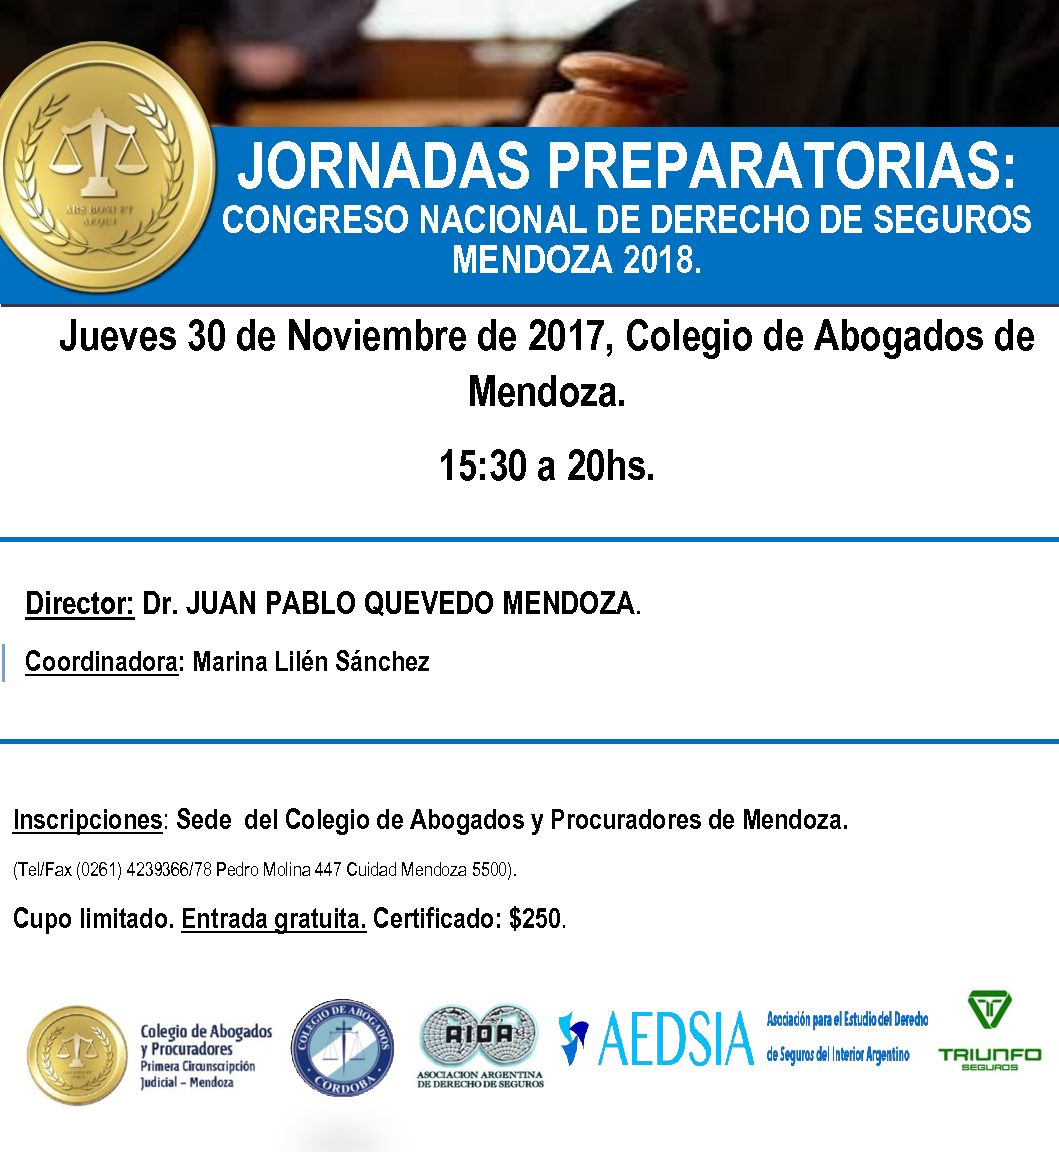 Congreso Nacional de Derechos de Seguros, Mendoza 2018